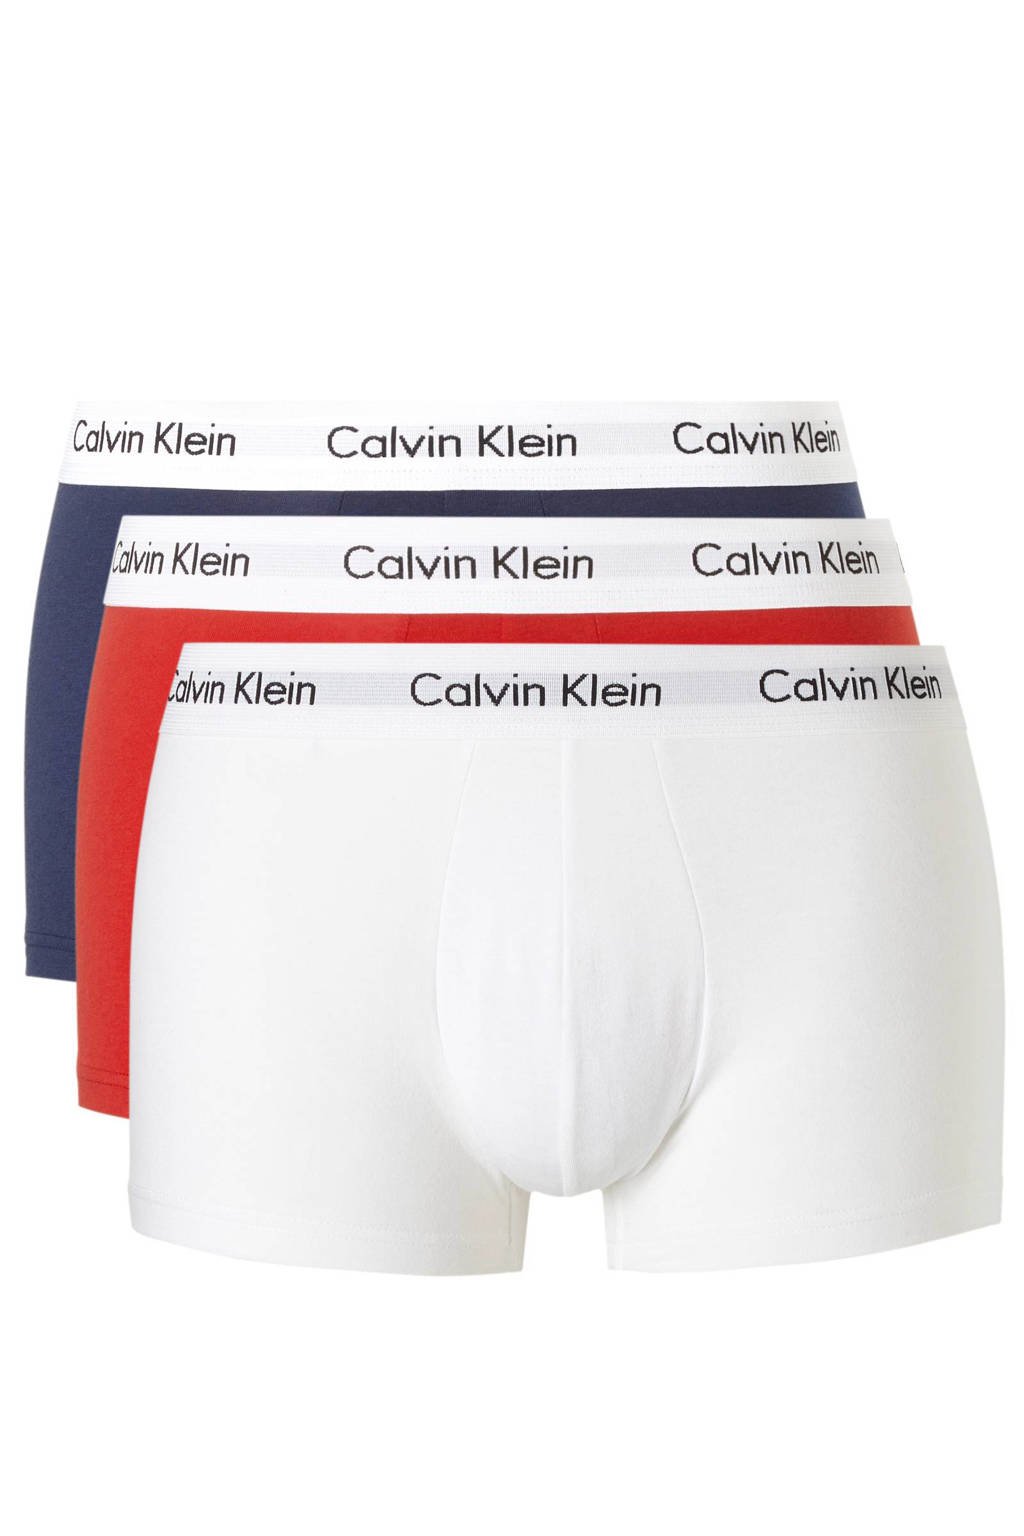 CALVIN KLEIN UNDERWEAR boxershort (set van 3), Rood/wit/blauw